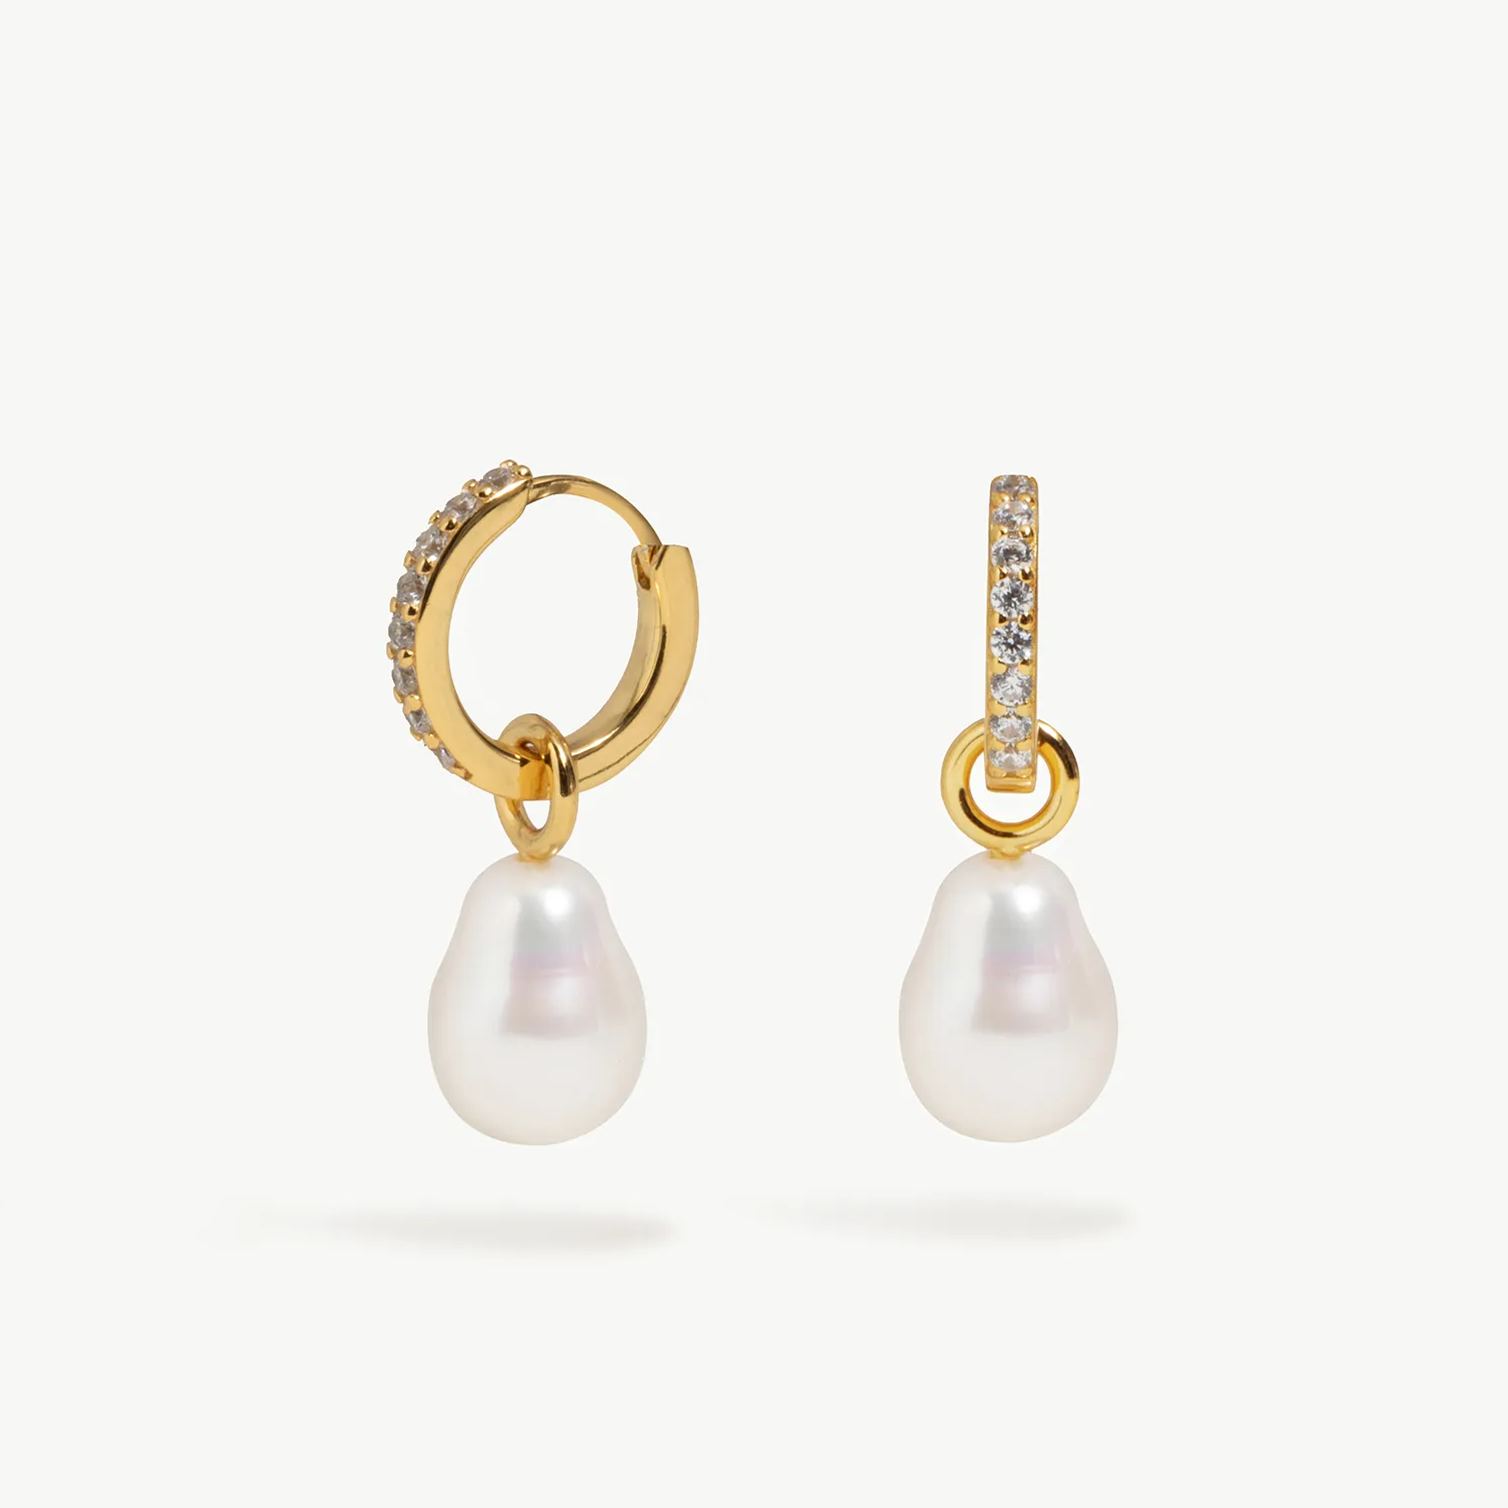 Buy 18 Karat Gold Gemstone Charms Hoop Earrings for Women